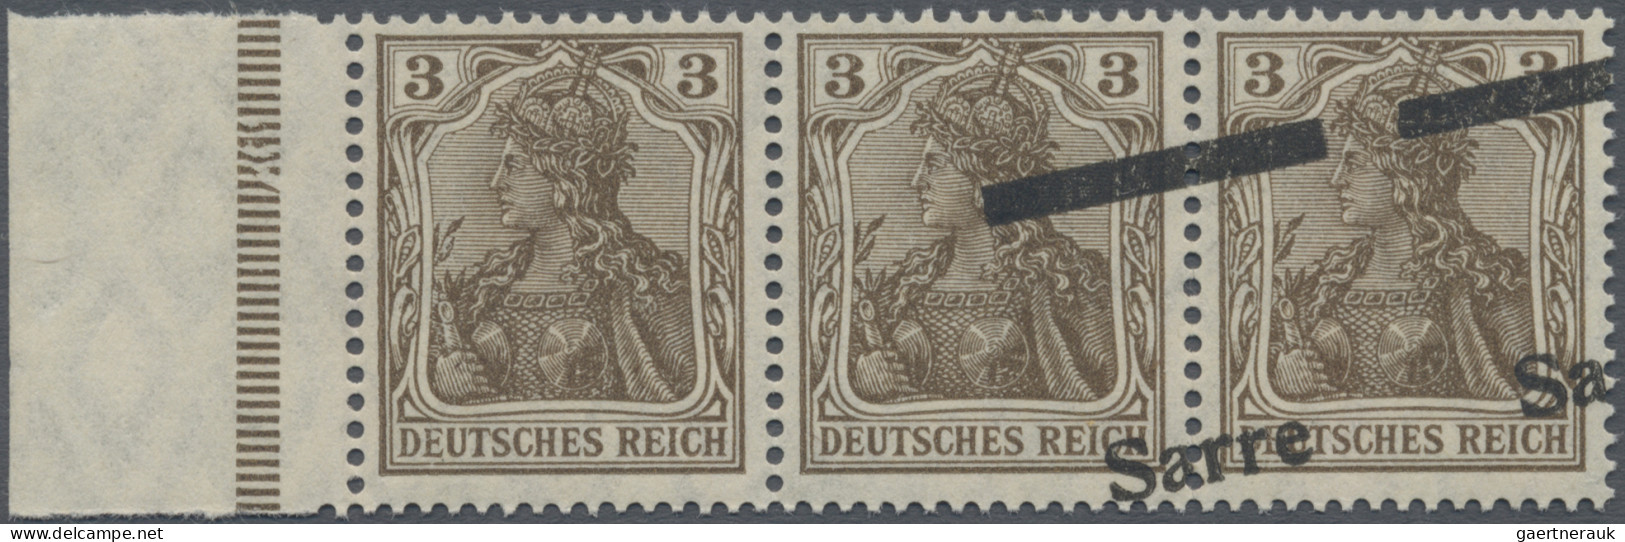 Deutsche Abstimmungsgebiete: Saargebiet: 1920, Germania Sarre 3 Pf. Dunkelockerb - Neufs